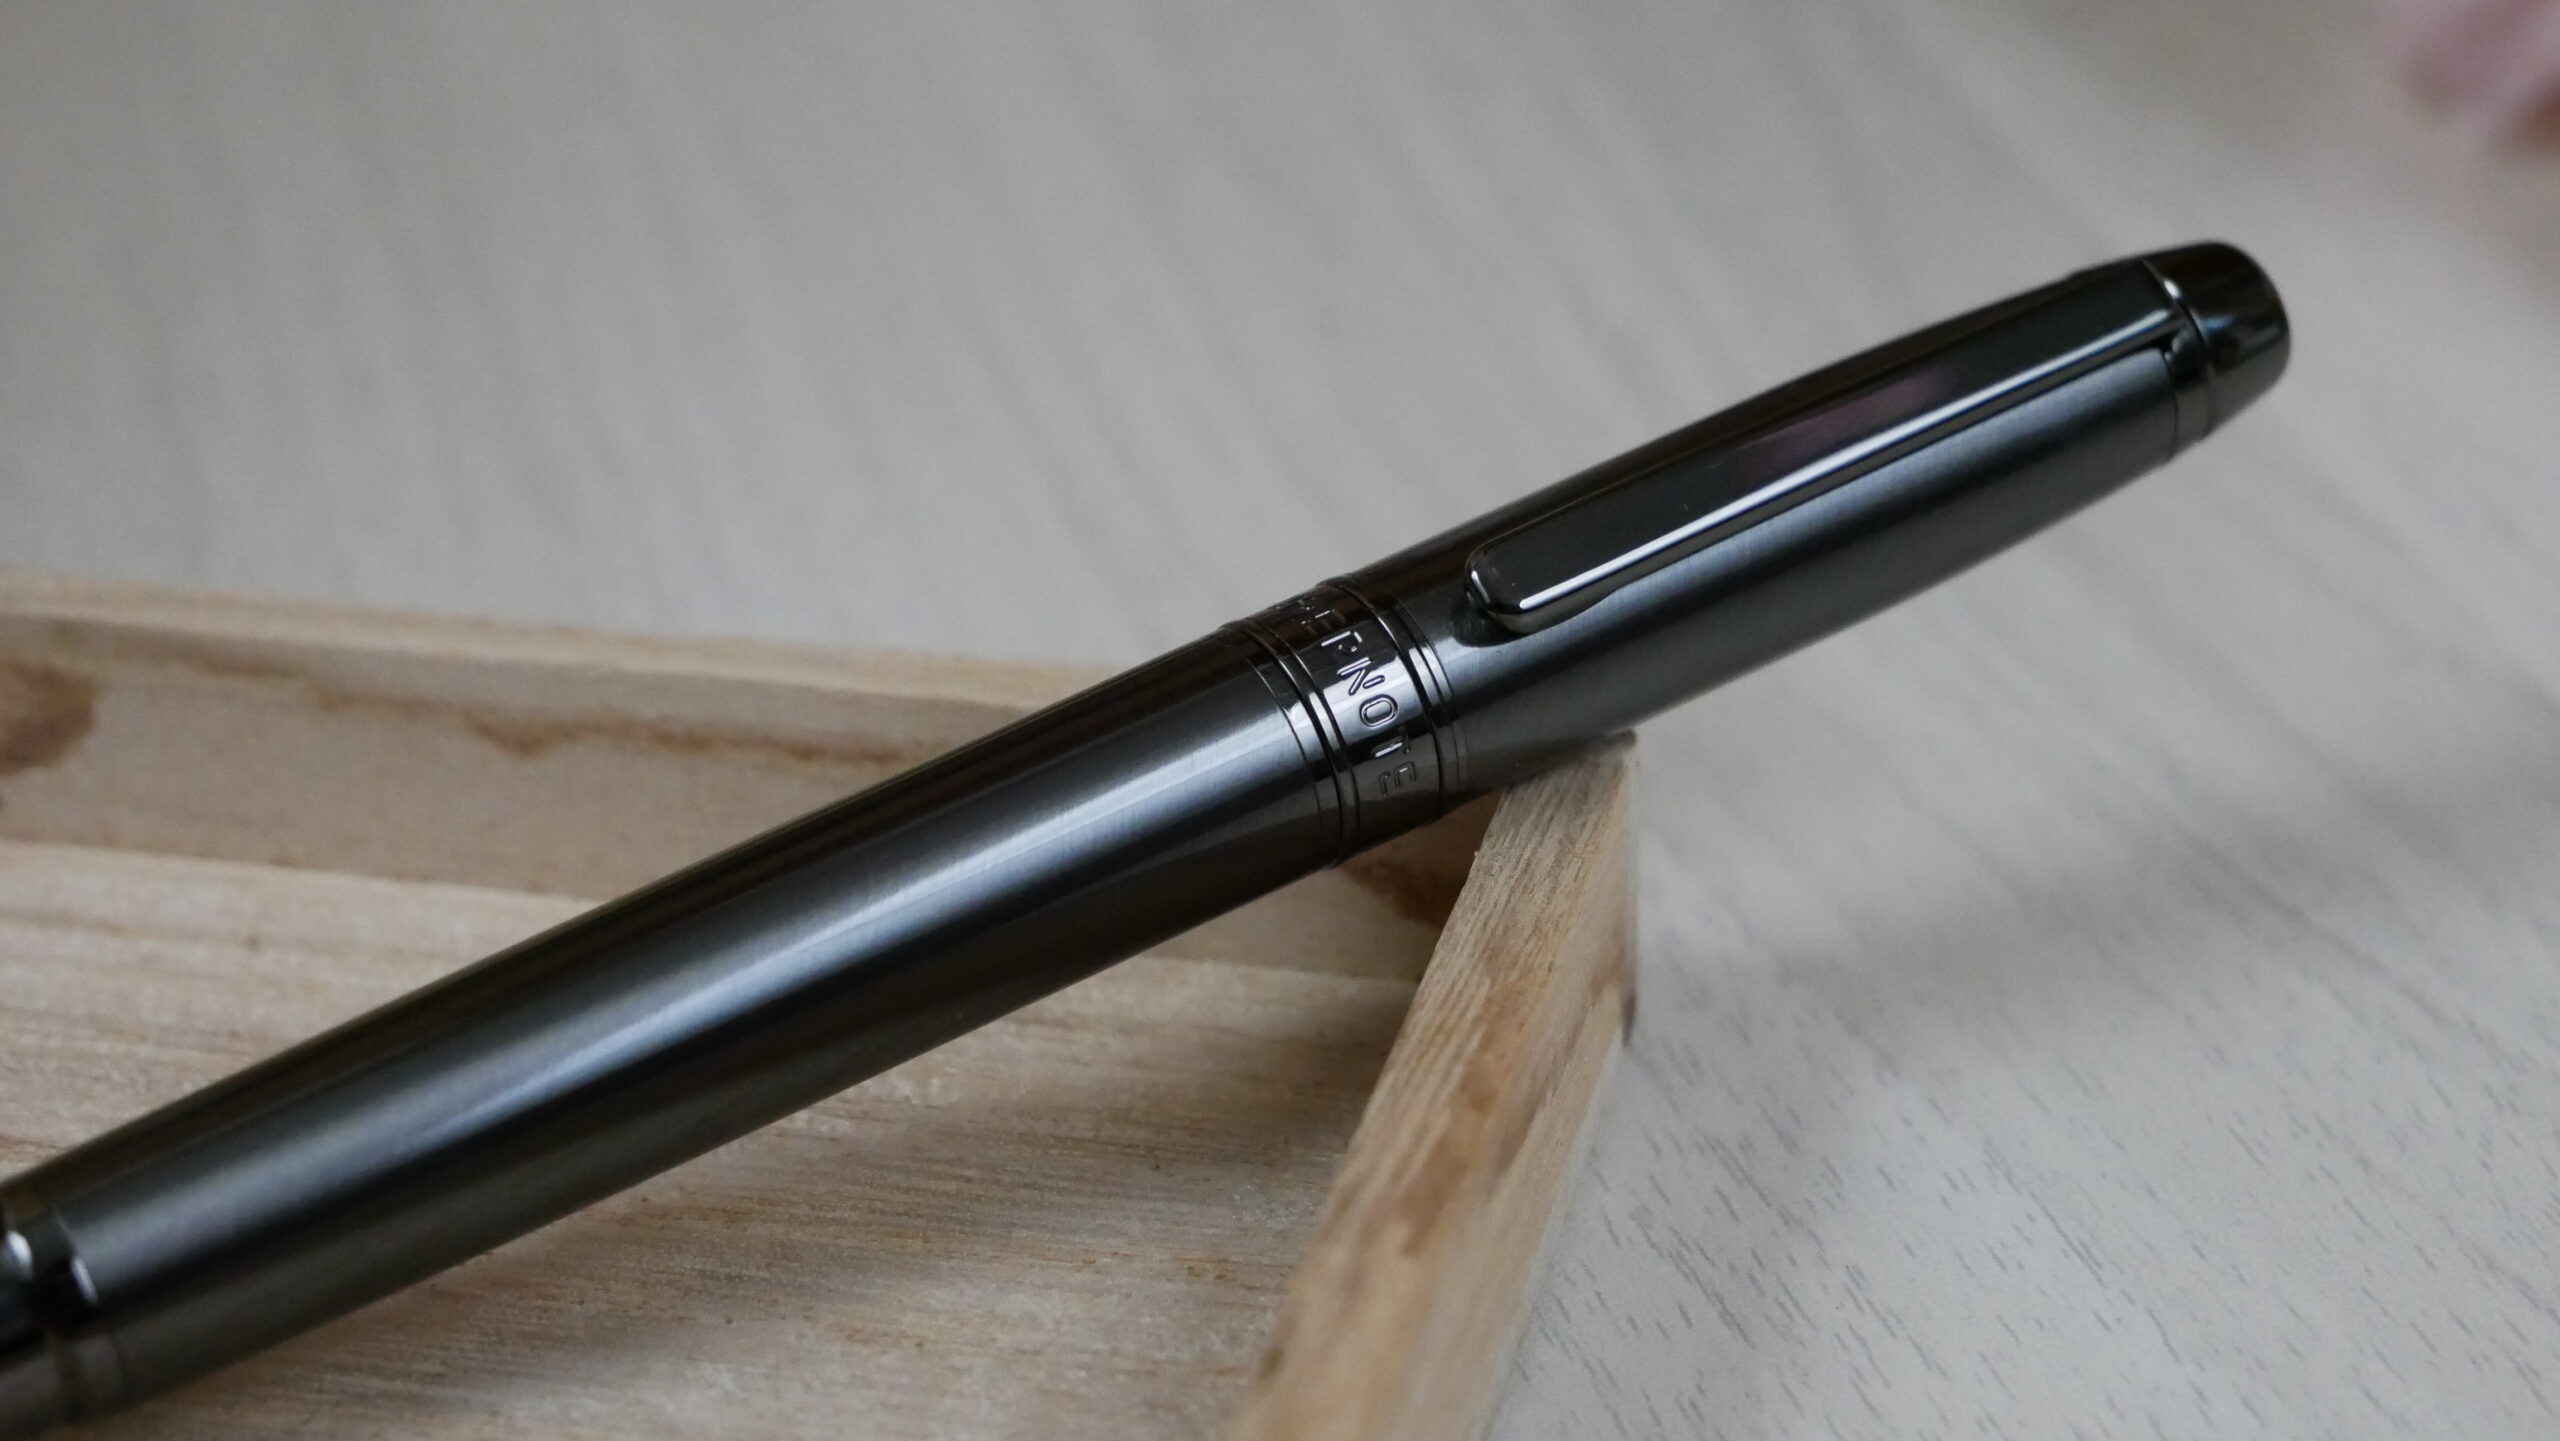 Kindle Scribe Premium Pen + Titanium Nib : r/Supernote